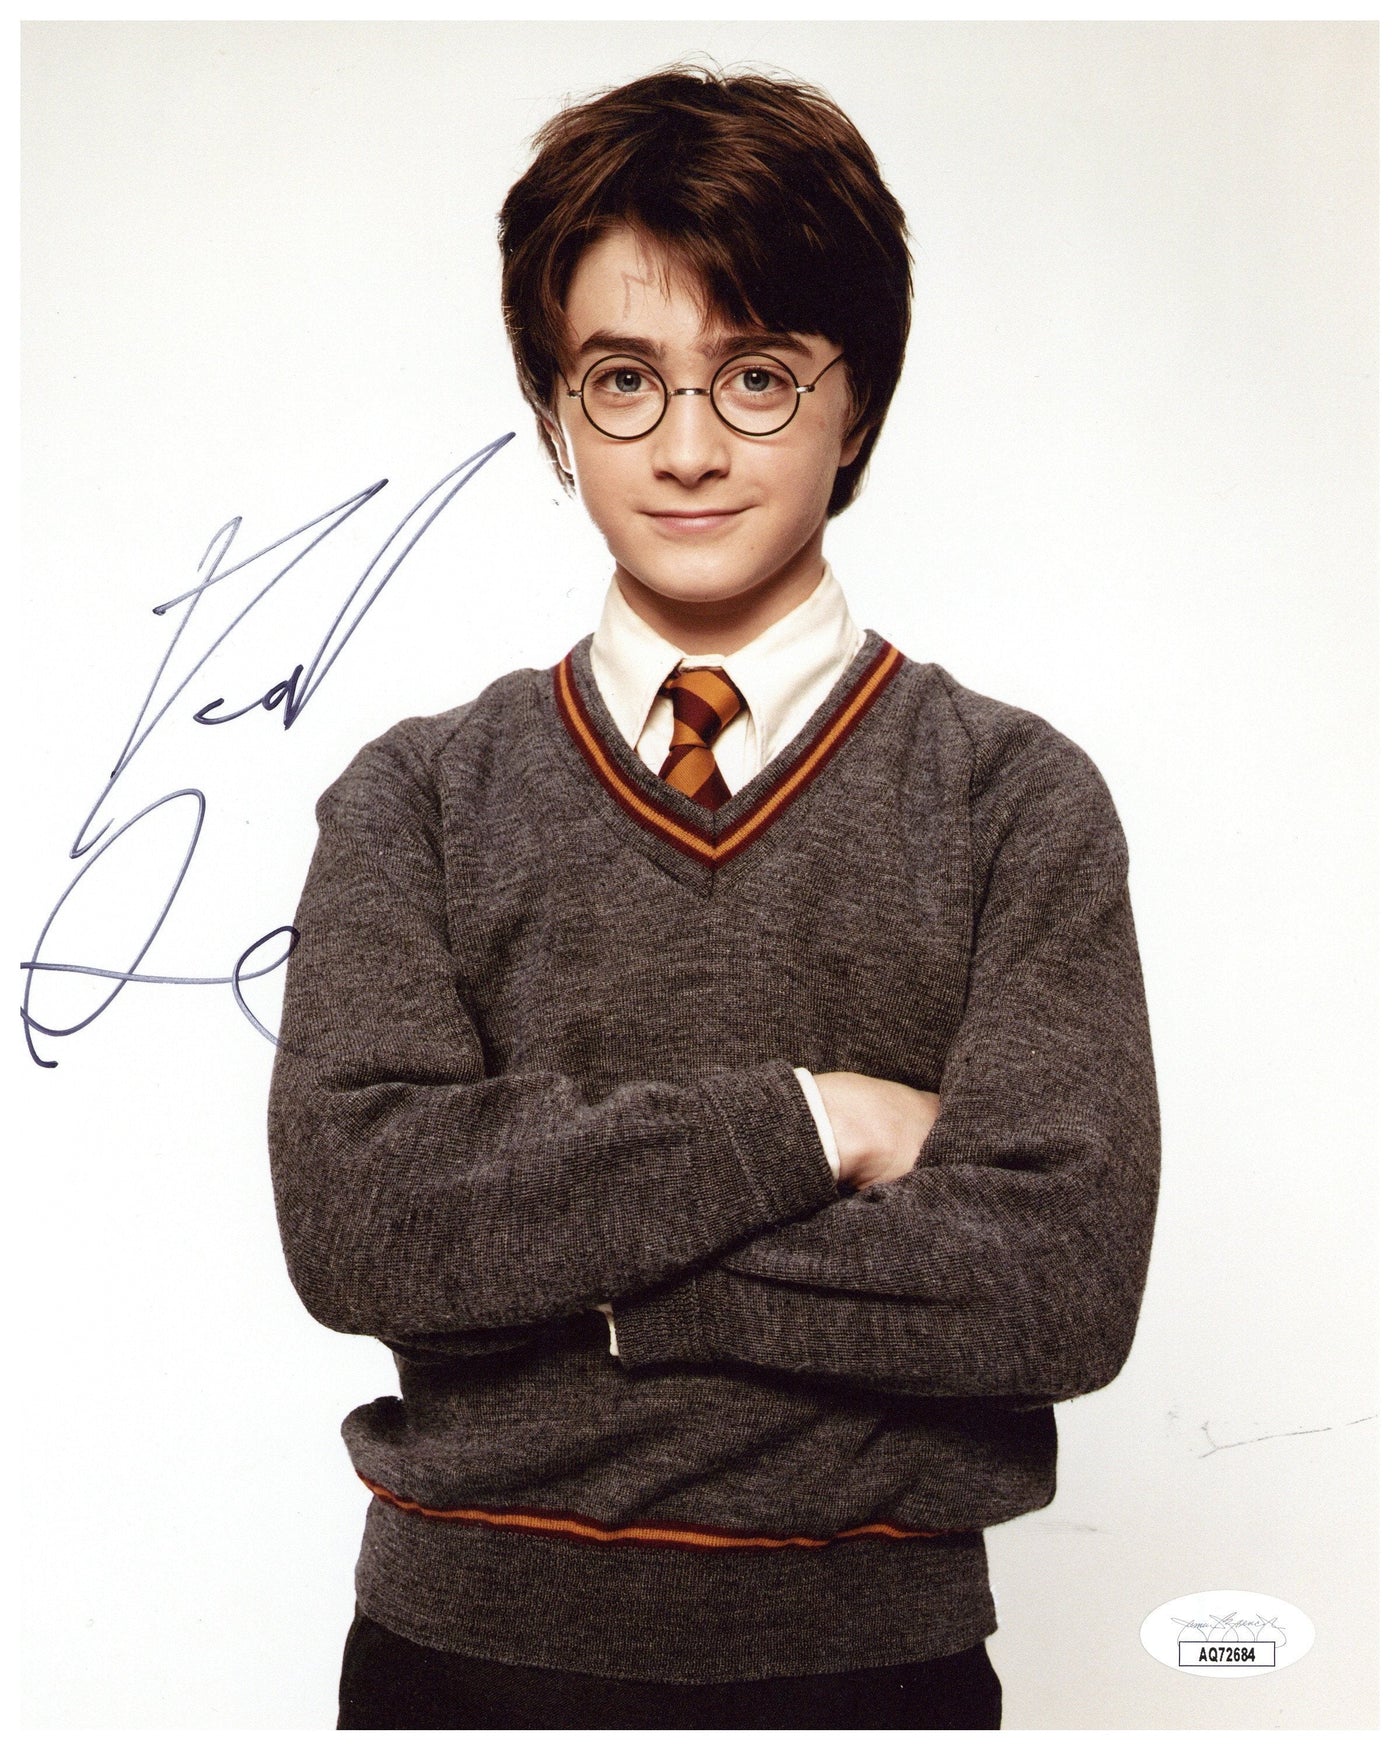 Daniel Radcliffe Signed 8x10 Photo Harry Potter Authentic Autographed JSA COA